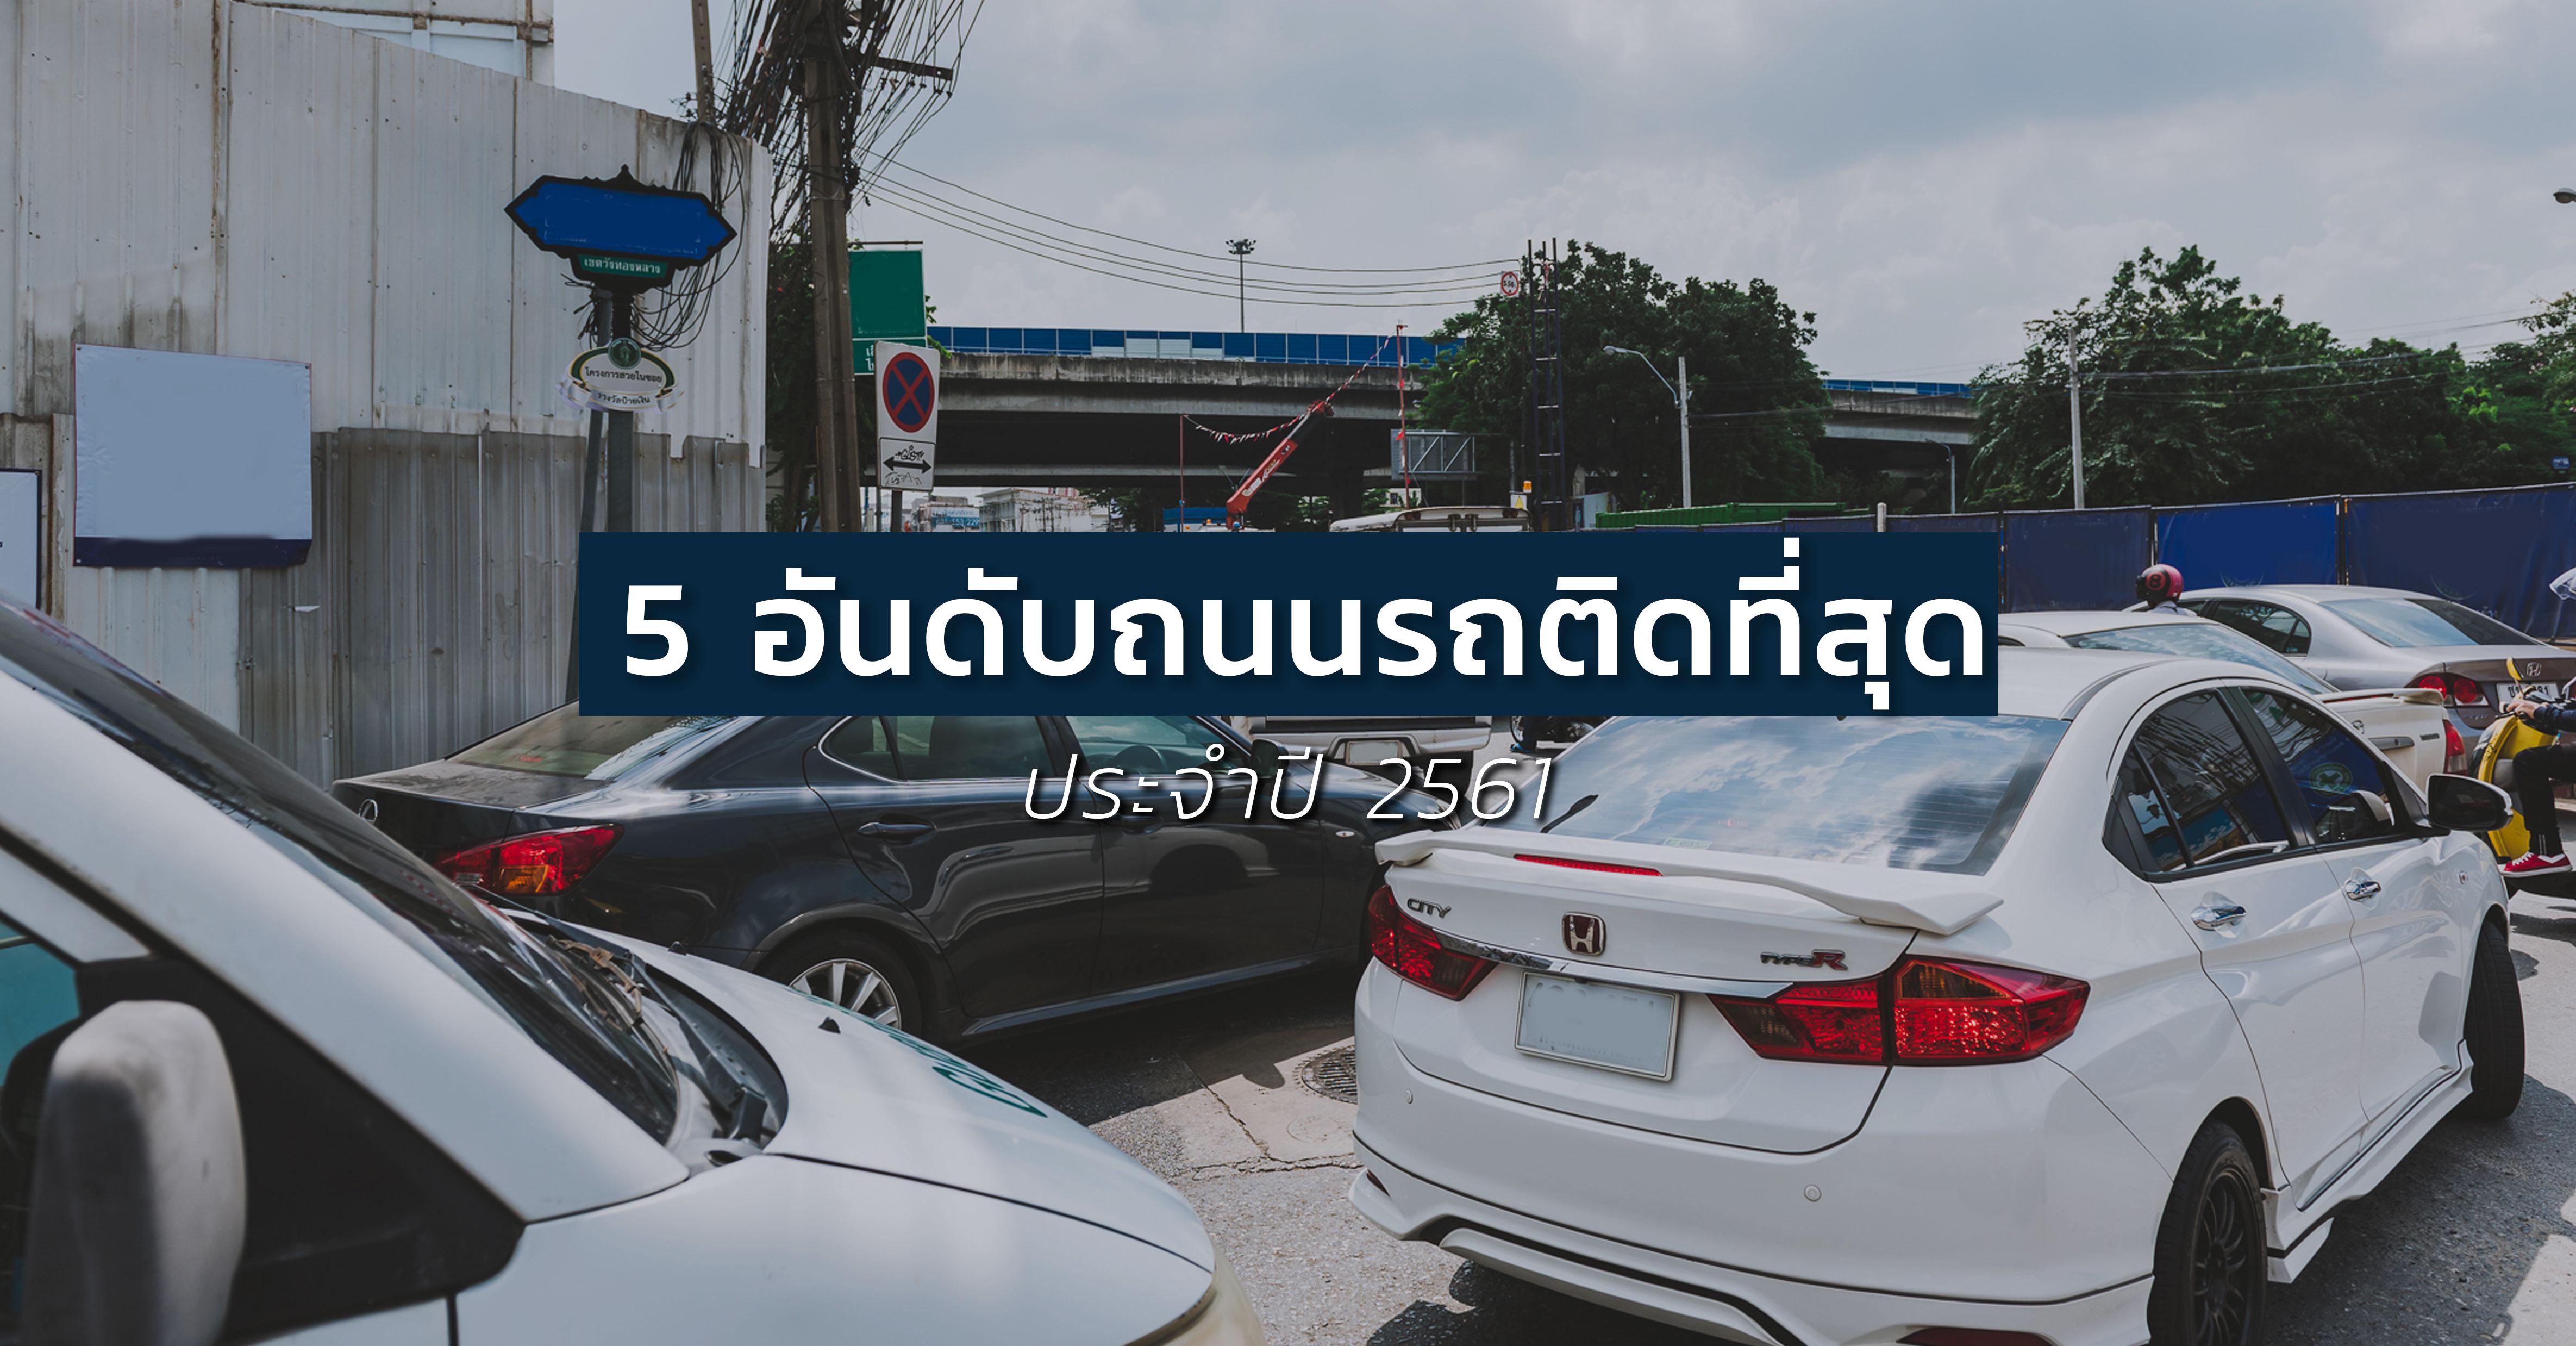 รูปบทความ สุดจัดปลัดบอก! 5 อันดับถนนที่รถติดมากสุดในไทย